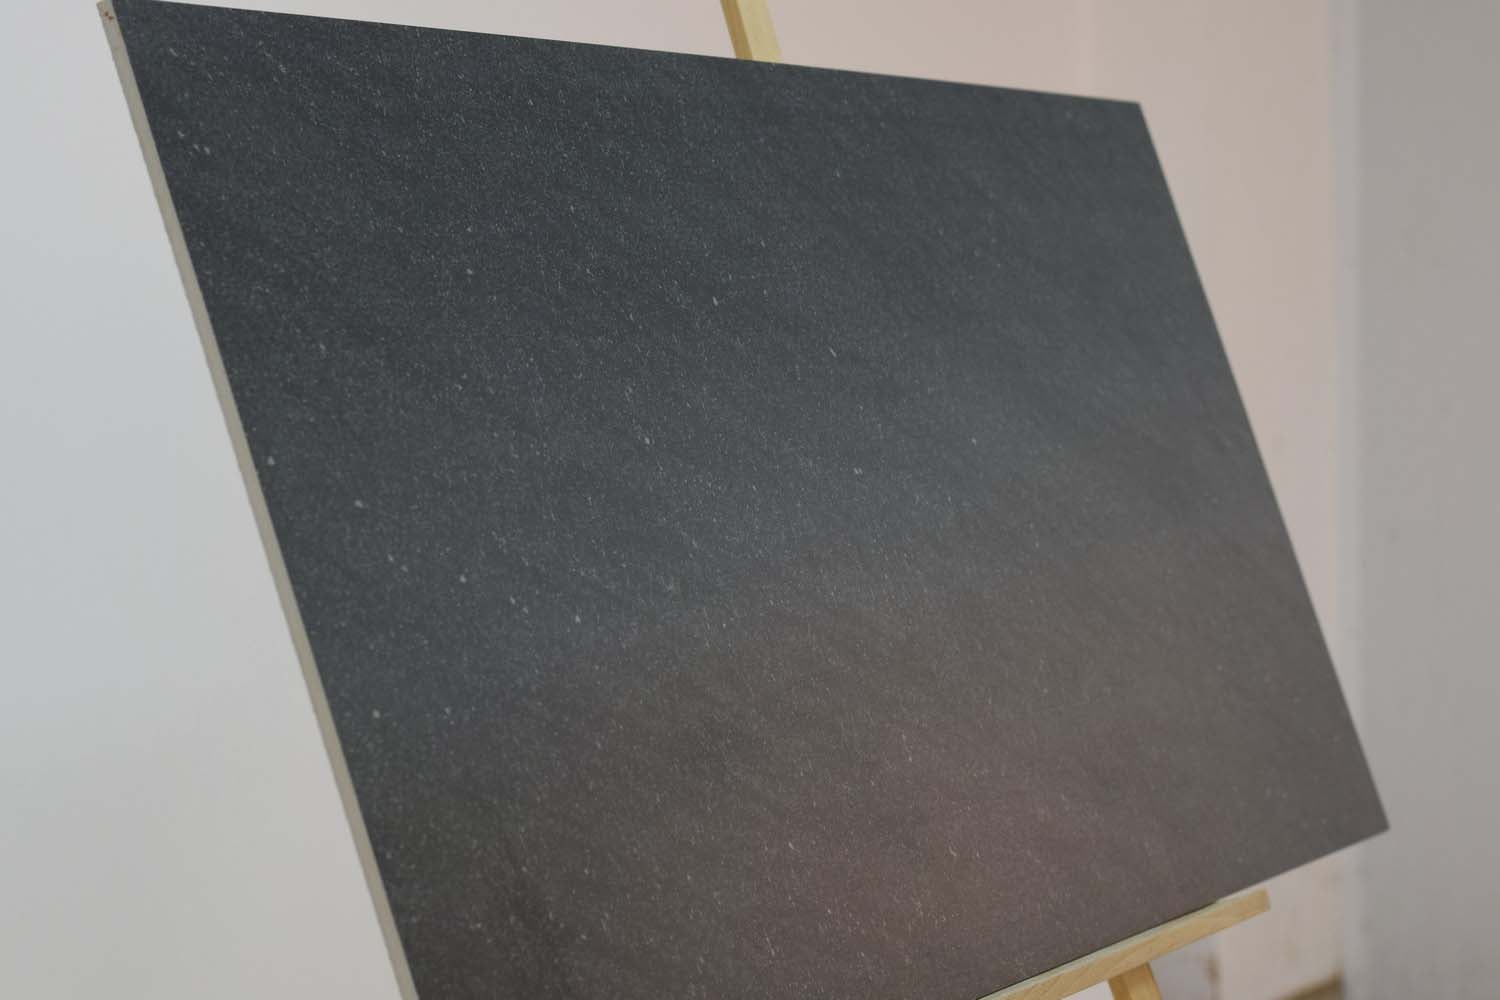 Satto Black Rektyfikowane Wielkoformatowe Płytki Podłogowe i Ścienne z Matowym Efektem Kamienia 600x1200mm (12595) 